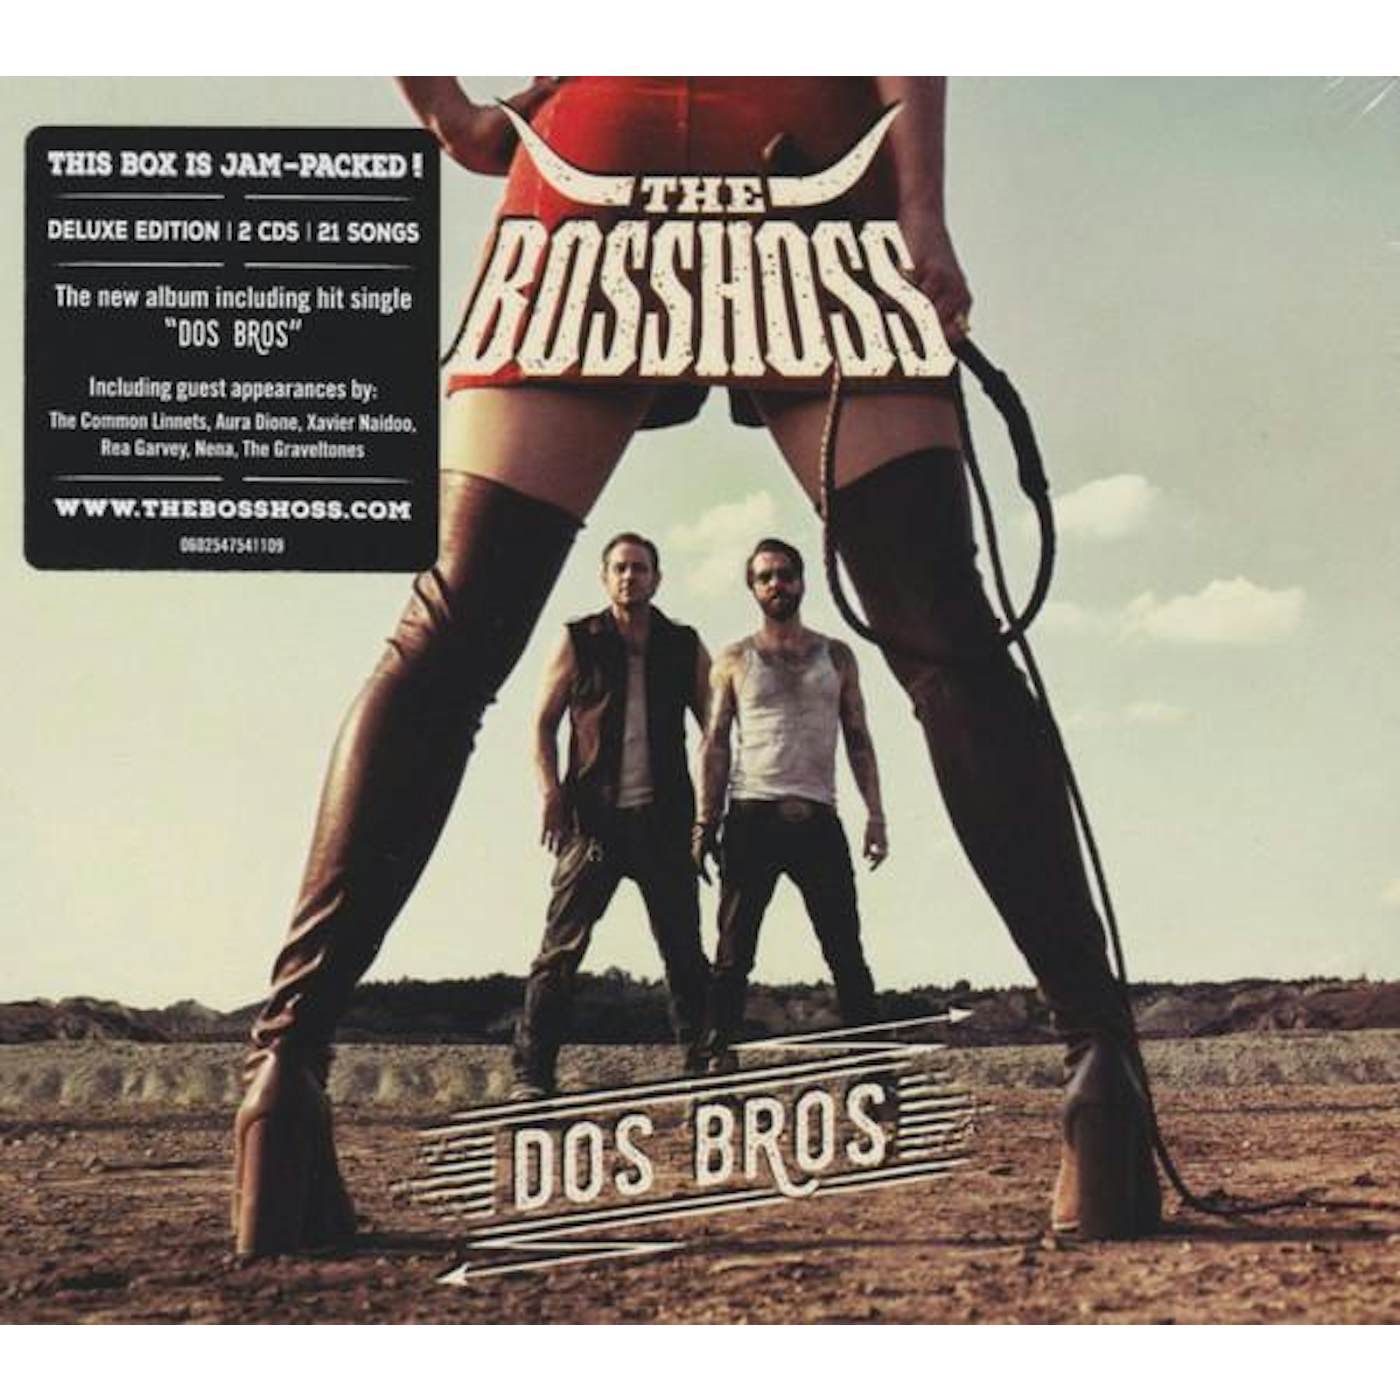 The BossHoss DOS BROS CD